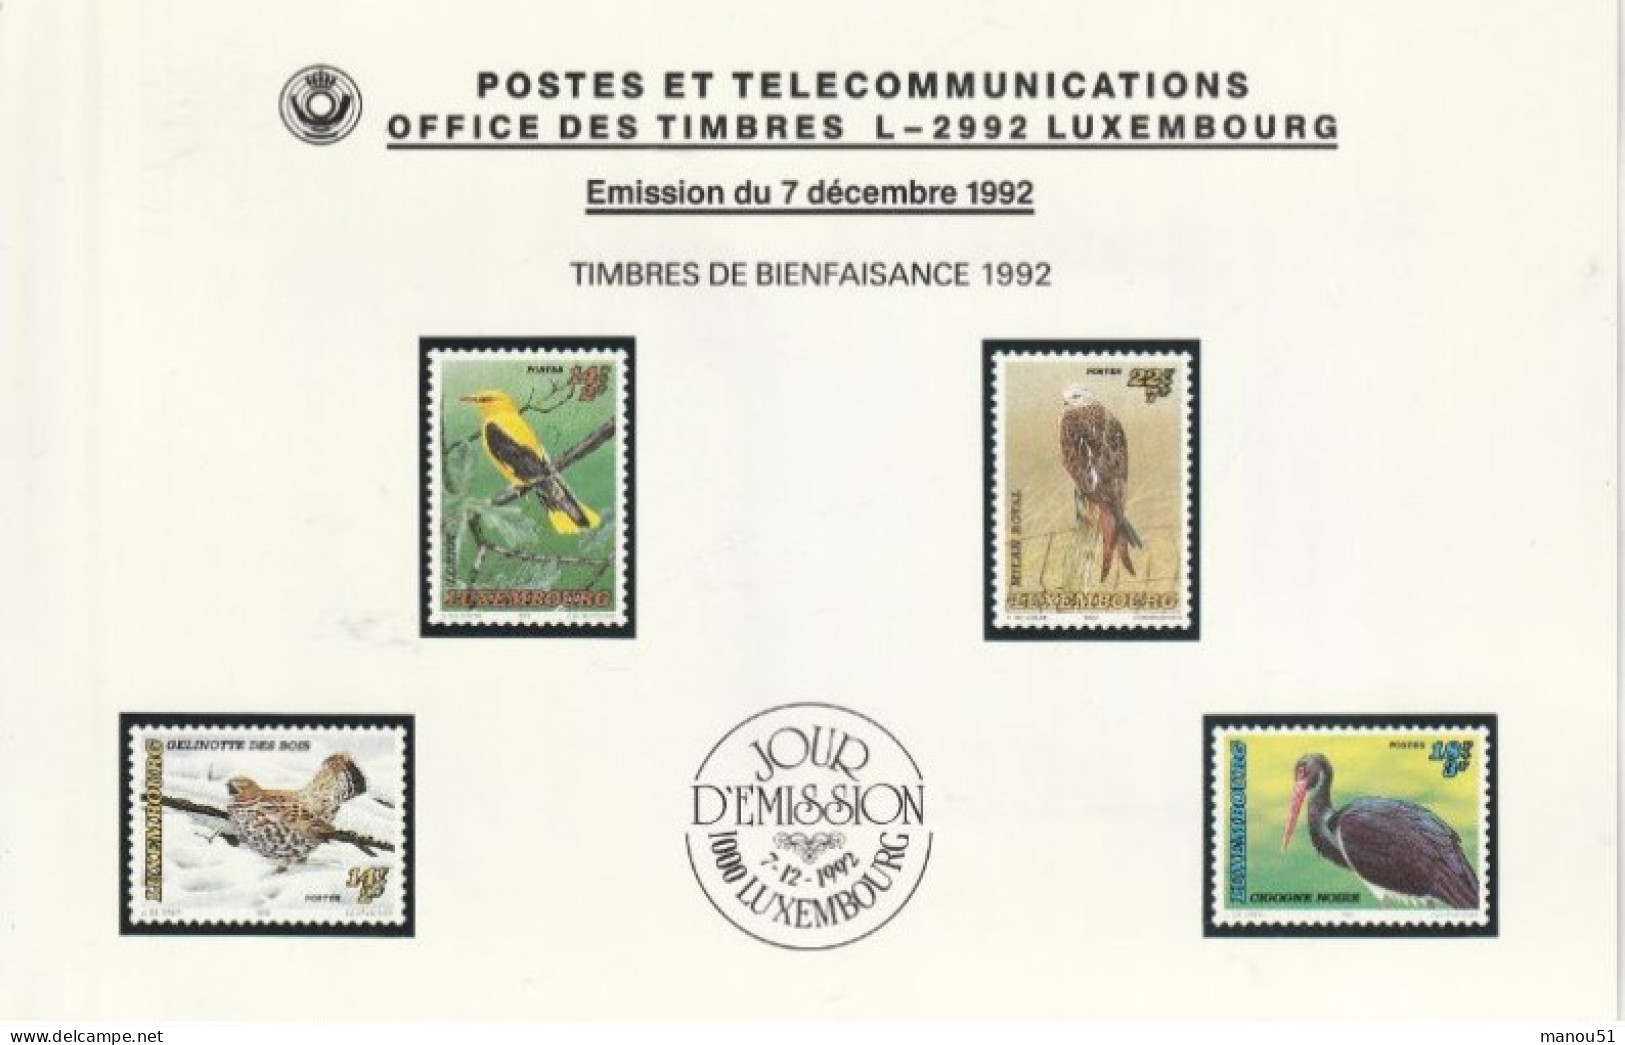 LUXEMBOURG - Timbres De Bienfaisance - Oiseaux Menacés - Emission Du 7.12.1992 - Lot 4 Timbres + 1 Enveloppe 1er Jour - Ongebruikt